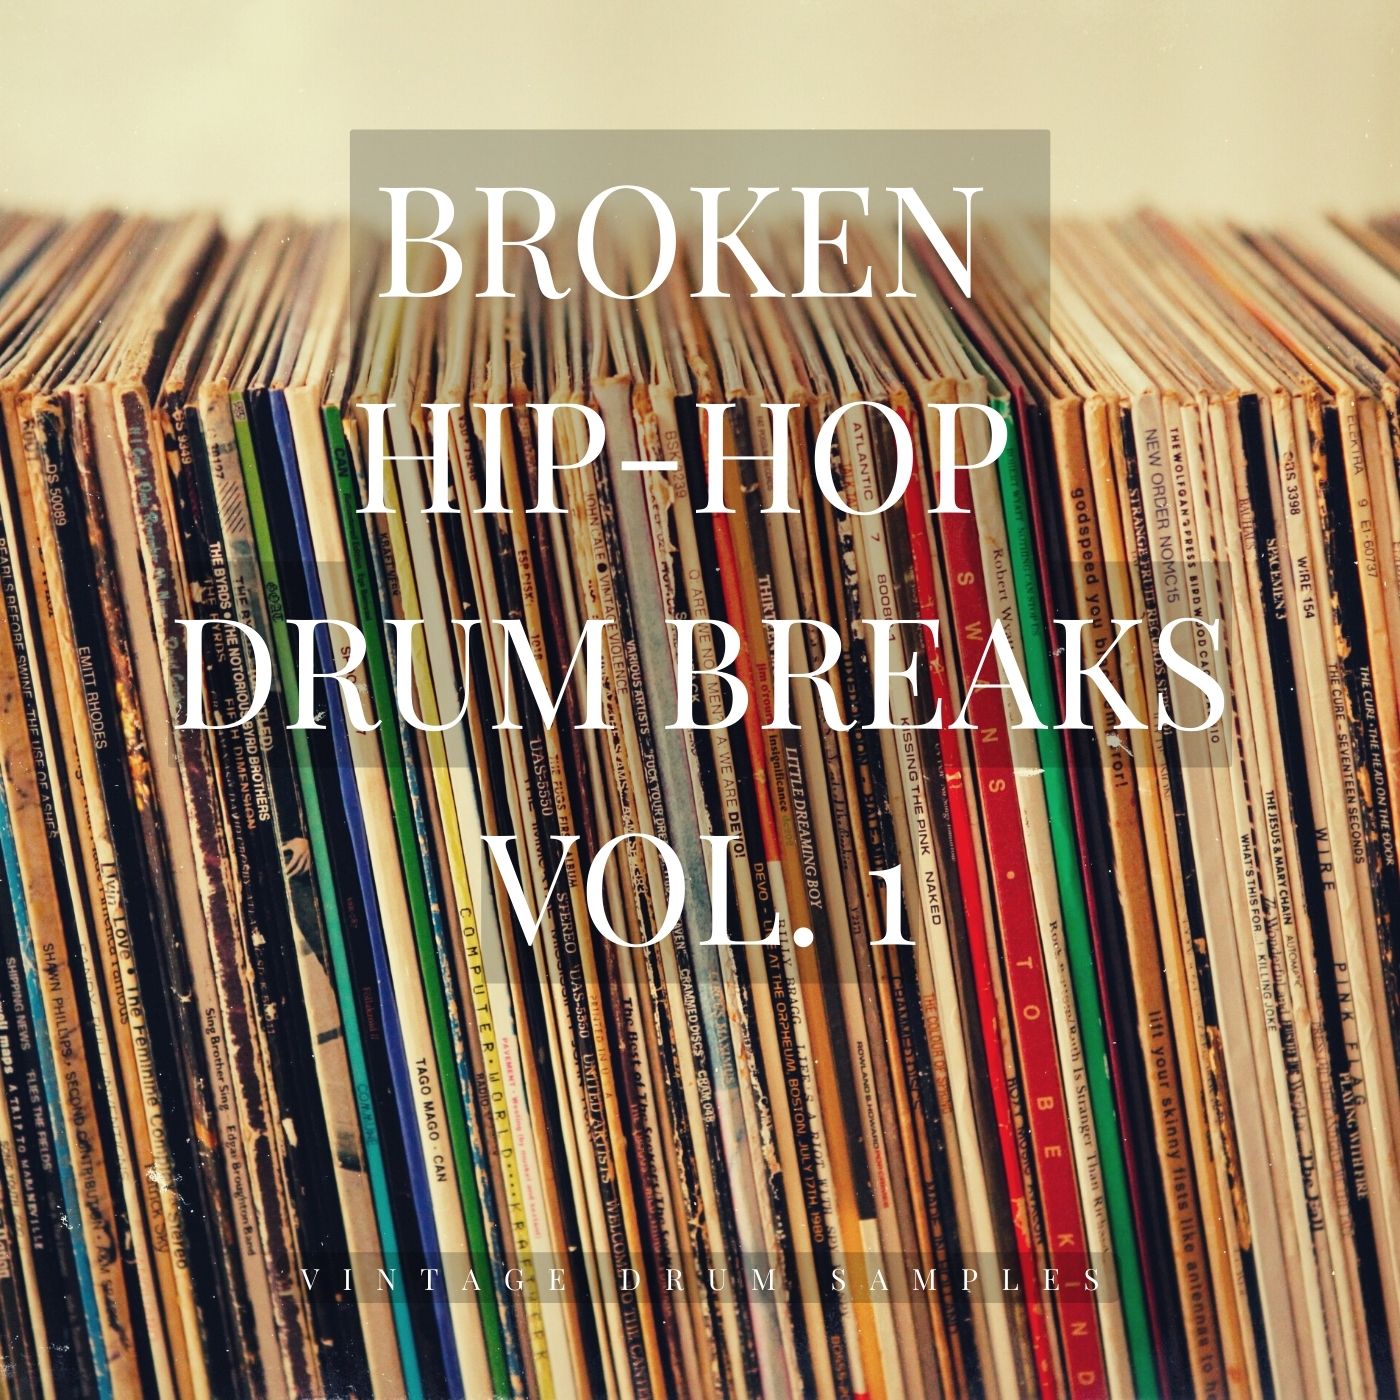 Vintage Drum Samples - Broken Drum Breaks Vol. 1 [Marketplace]